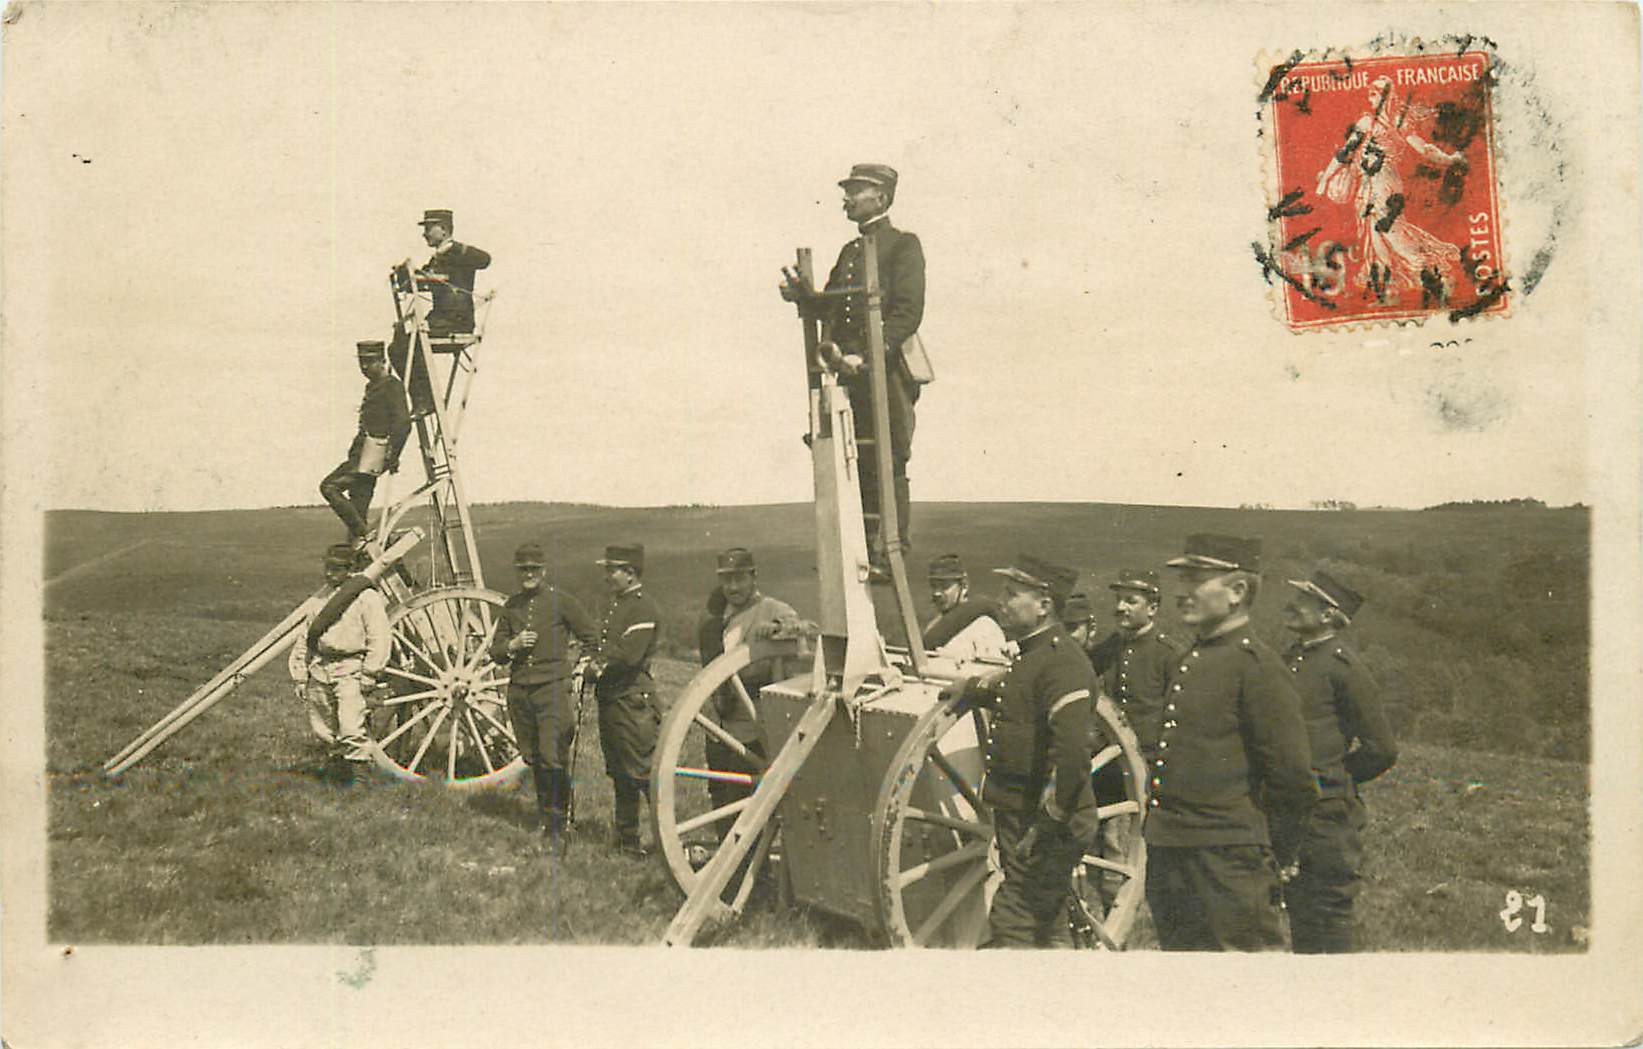 WW 86 POITIERS. Militaires en Campagne avec Périscopes mobiles vers 1911